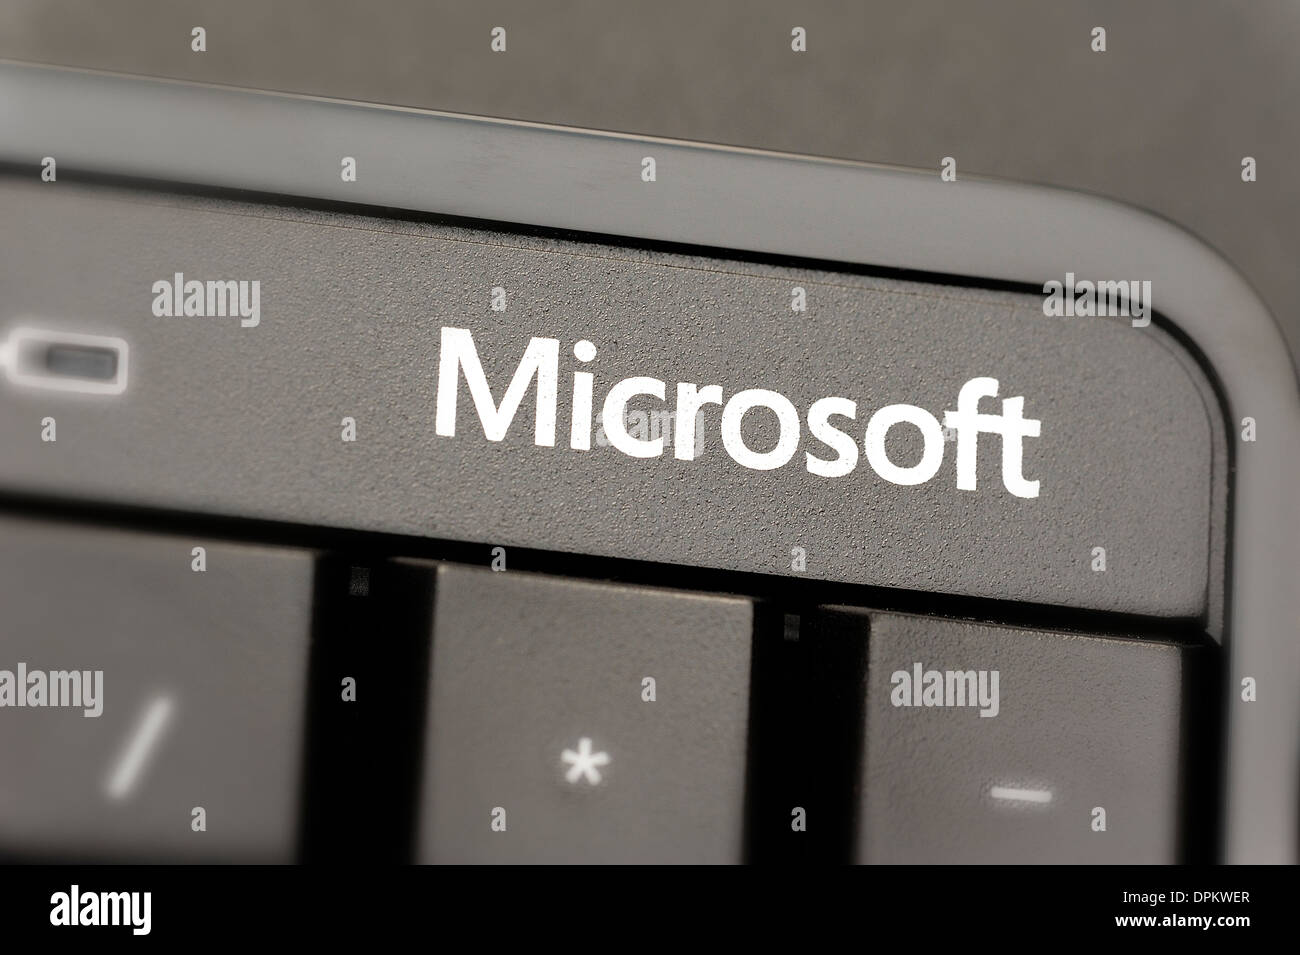 Microsoft wireless keyboard Stock Photo